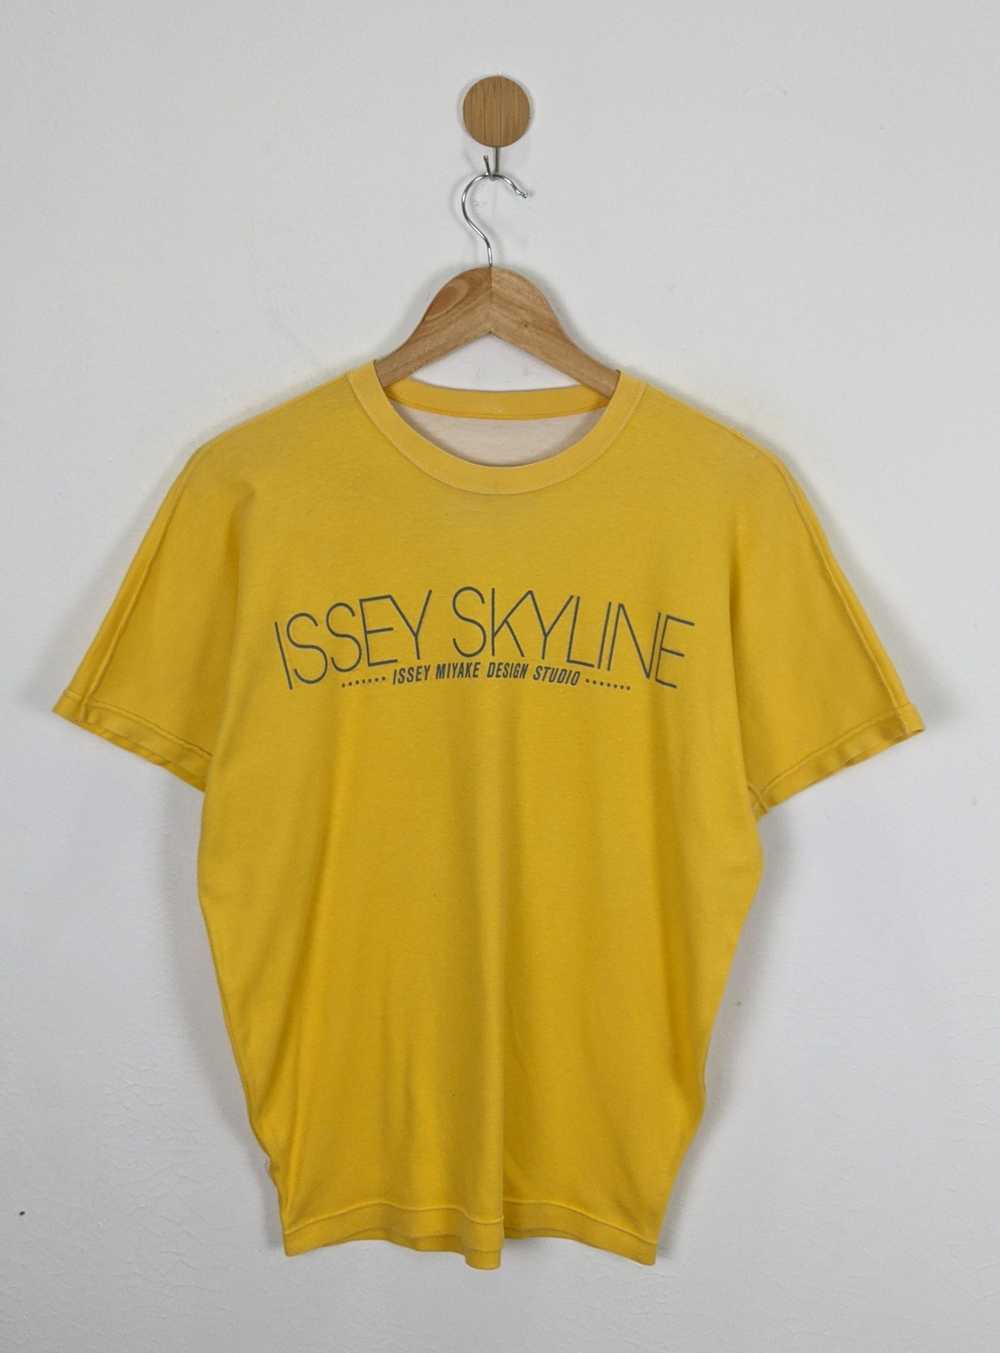 Issey Miyake Issey Miyake Skyline Reversible shirt - image 1